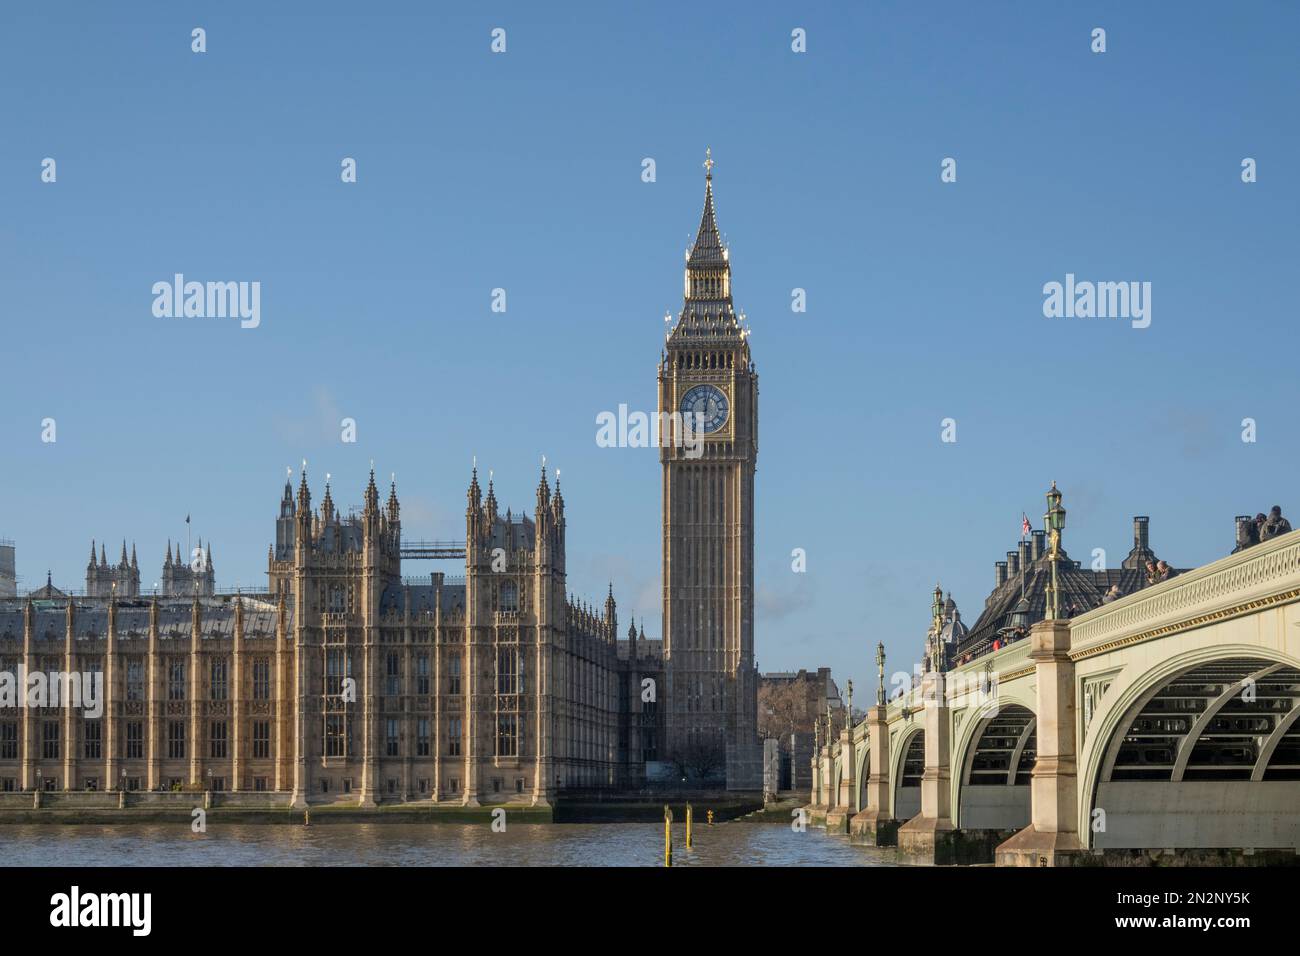 Big Ben (aussi appelé la tour Queen Elizabeth) sur les bâtiments du Parlement et le pont de Westminster, Westminster, Londres, Royaume-Uni Banque D'Images